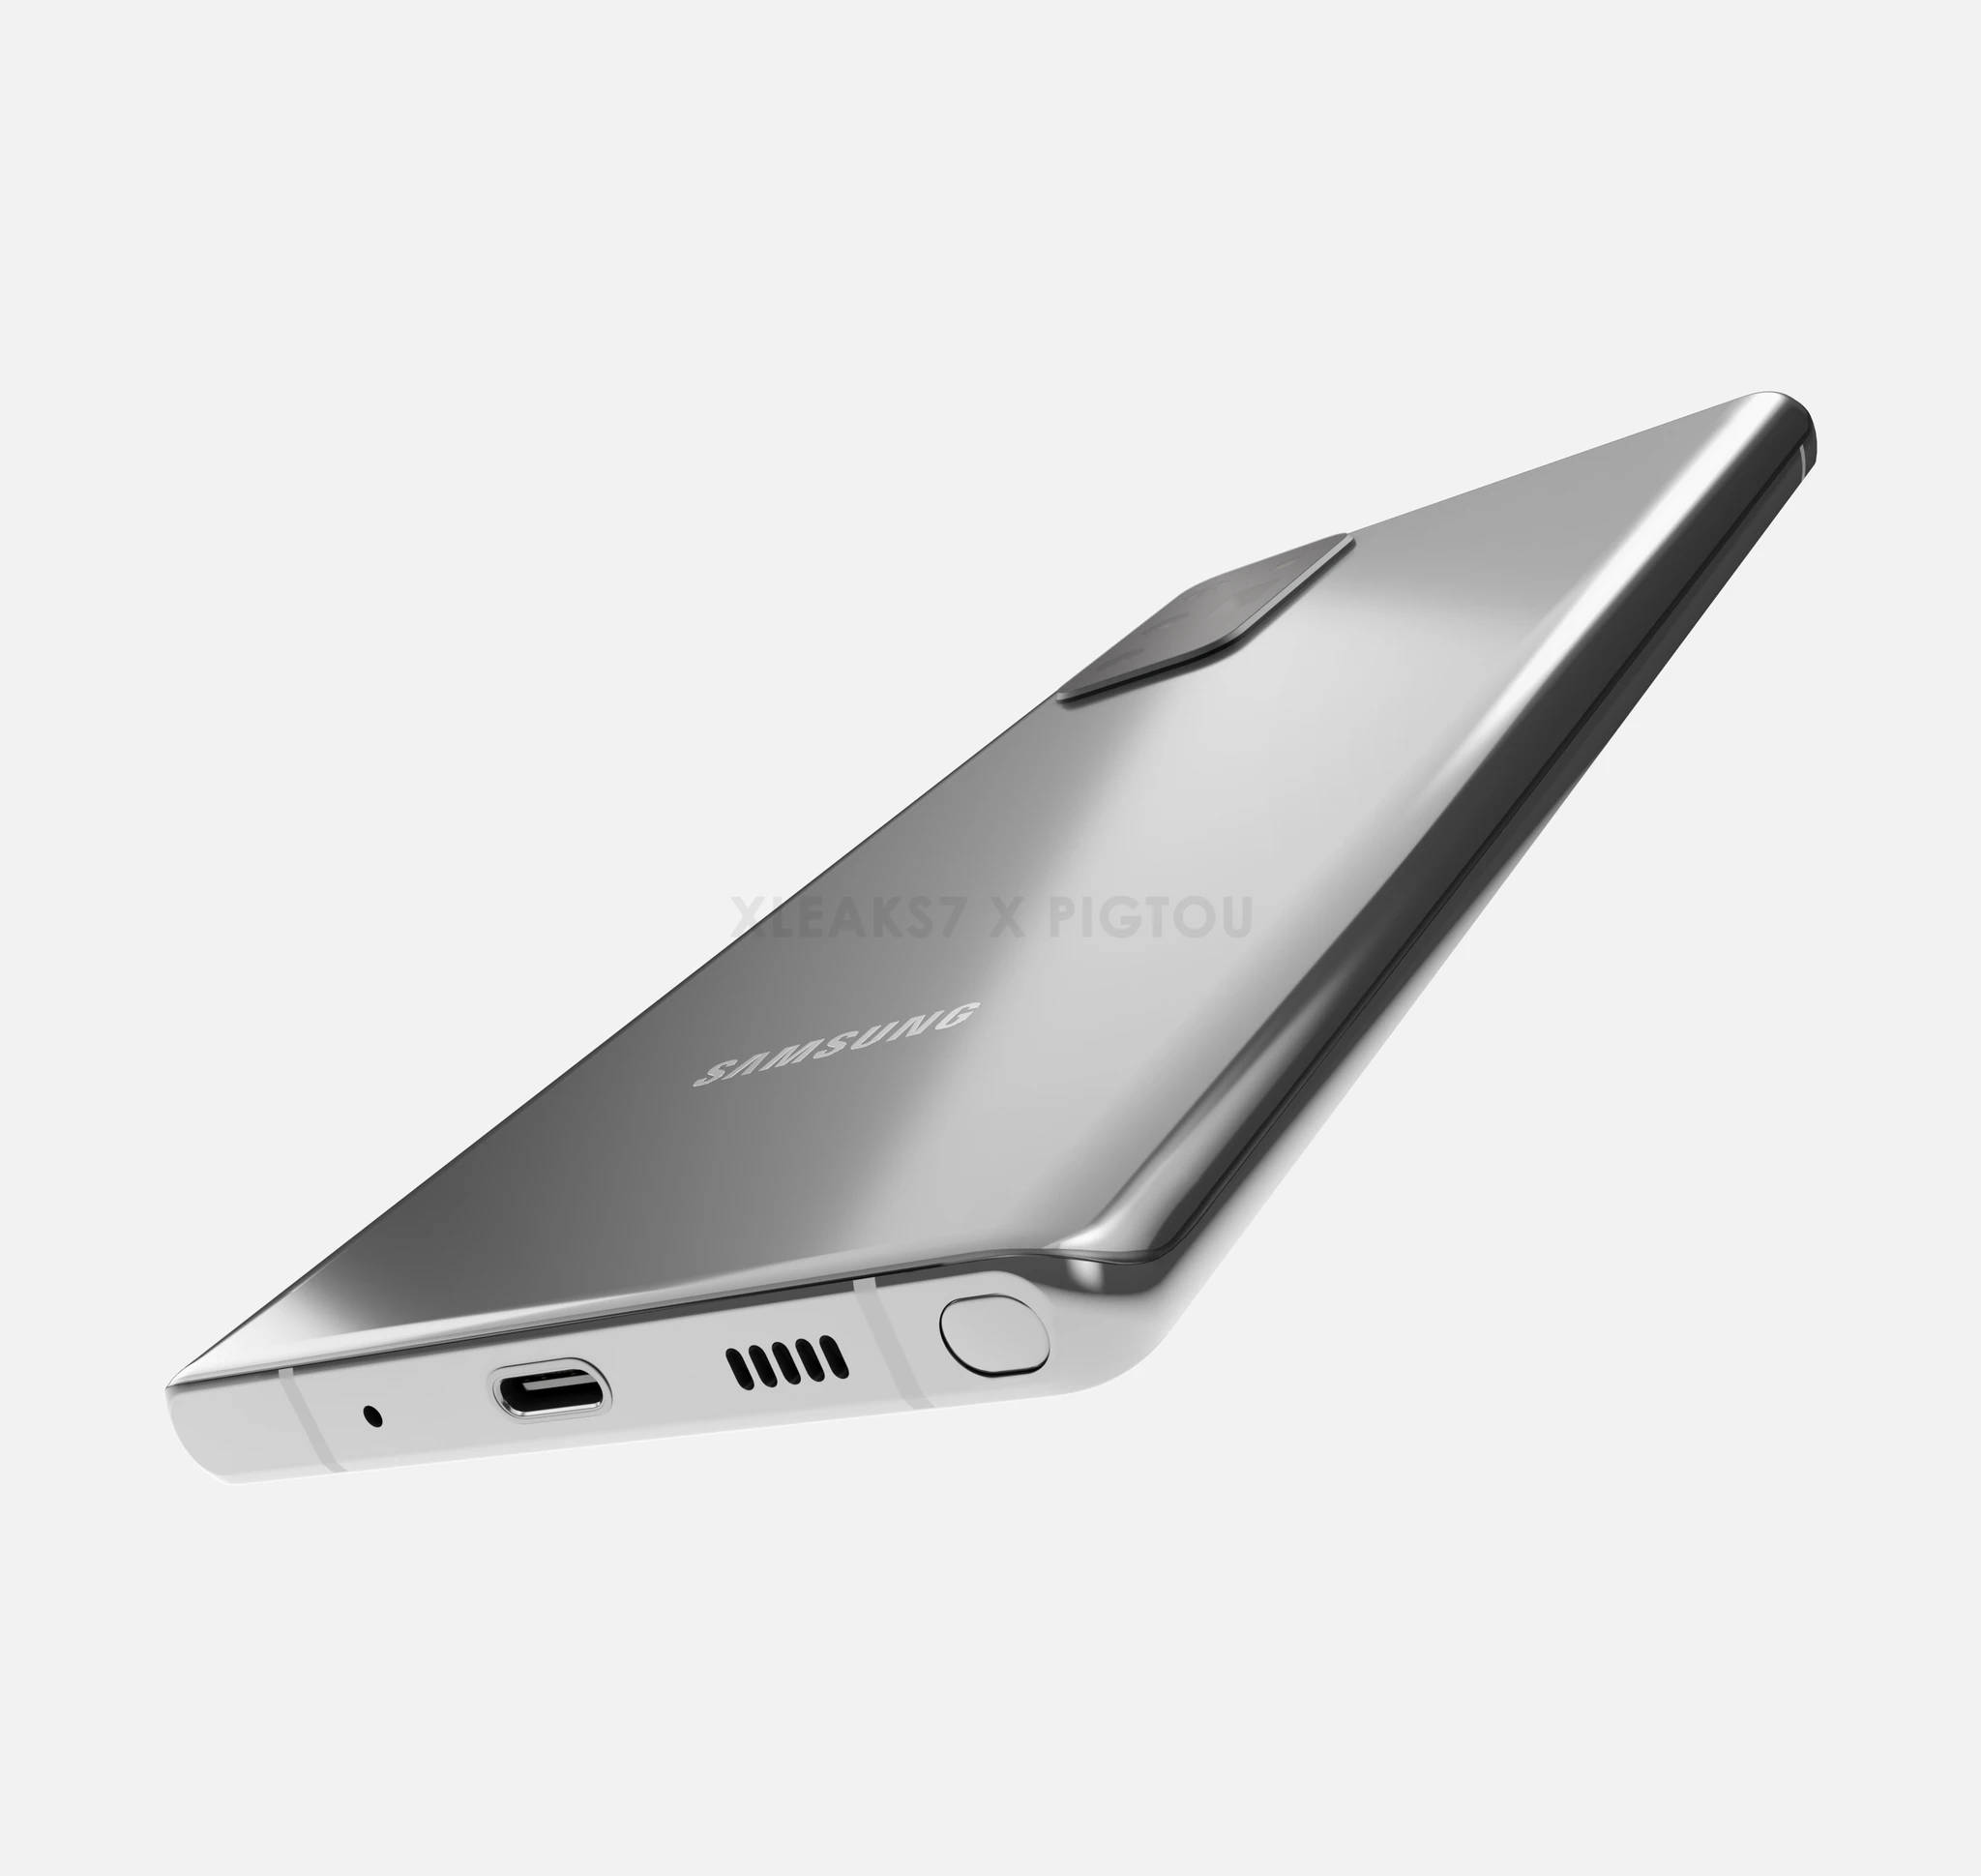 Samsung Galaxy Note 20 rendery design wygląd plotki przecieki wycieki specyfikacja dane techniczne